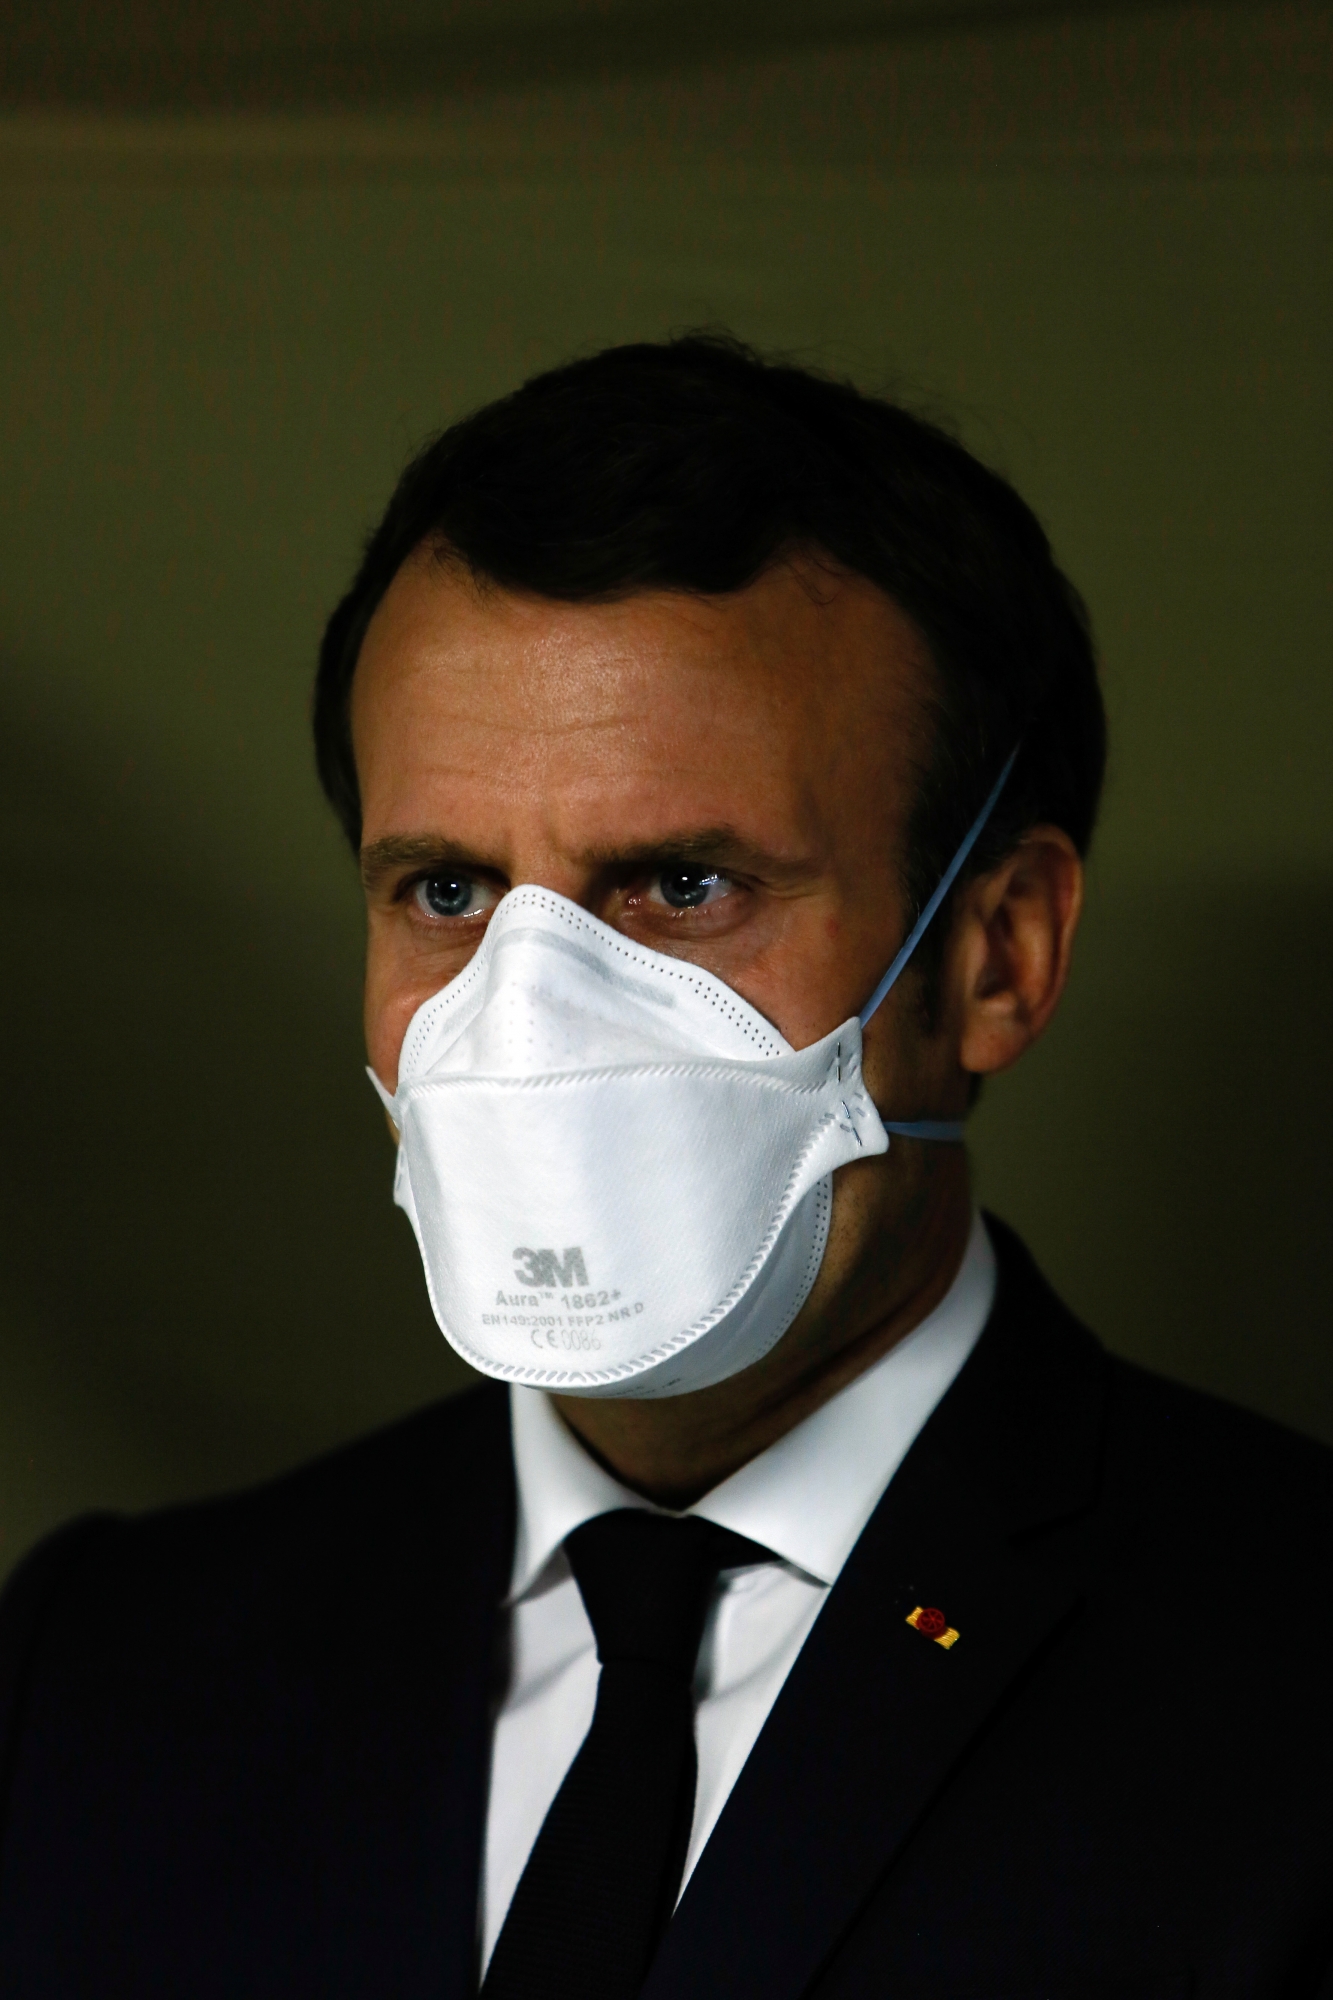 L’élection pour succéder à Emmaneul Macron à la tête de la France se déroulera en avril 2022.